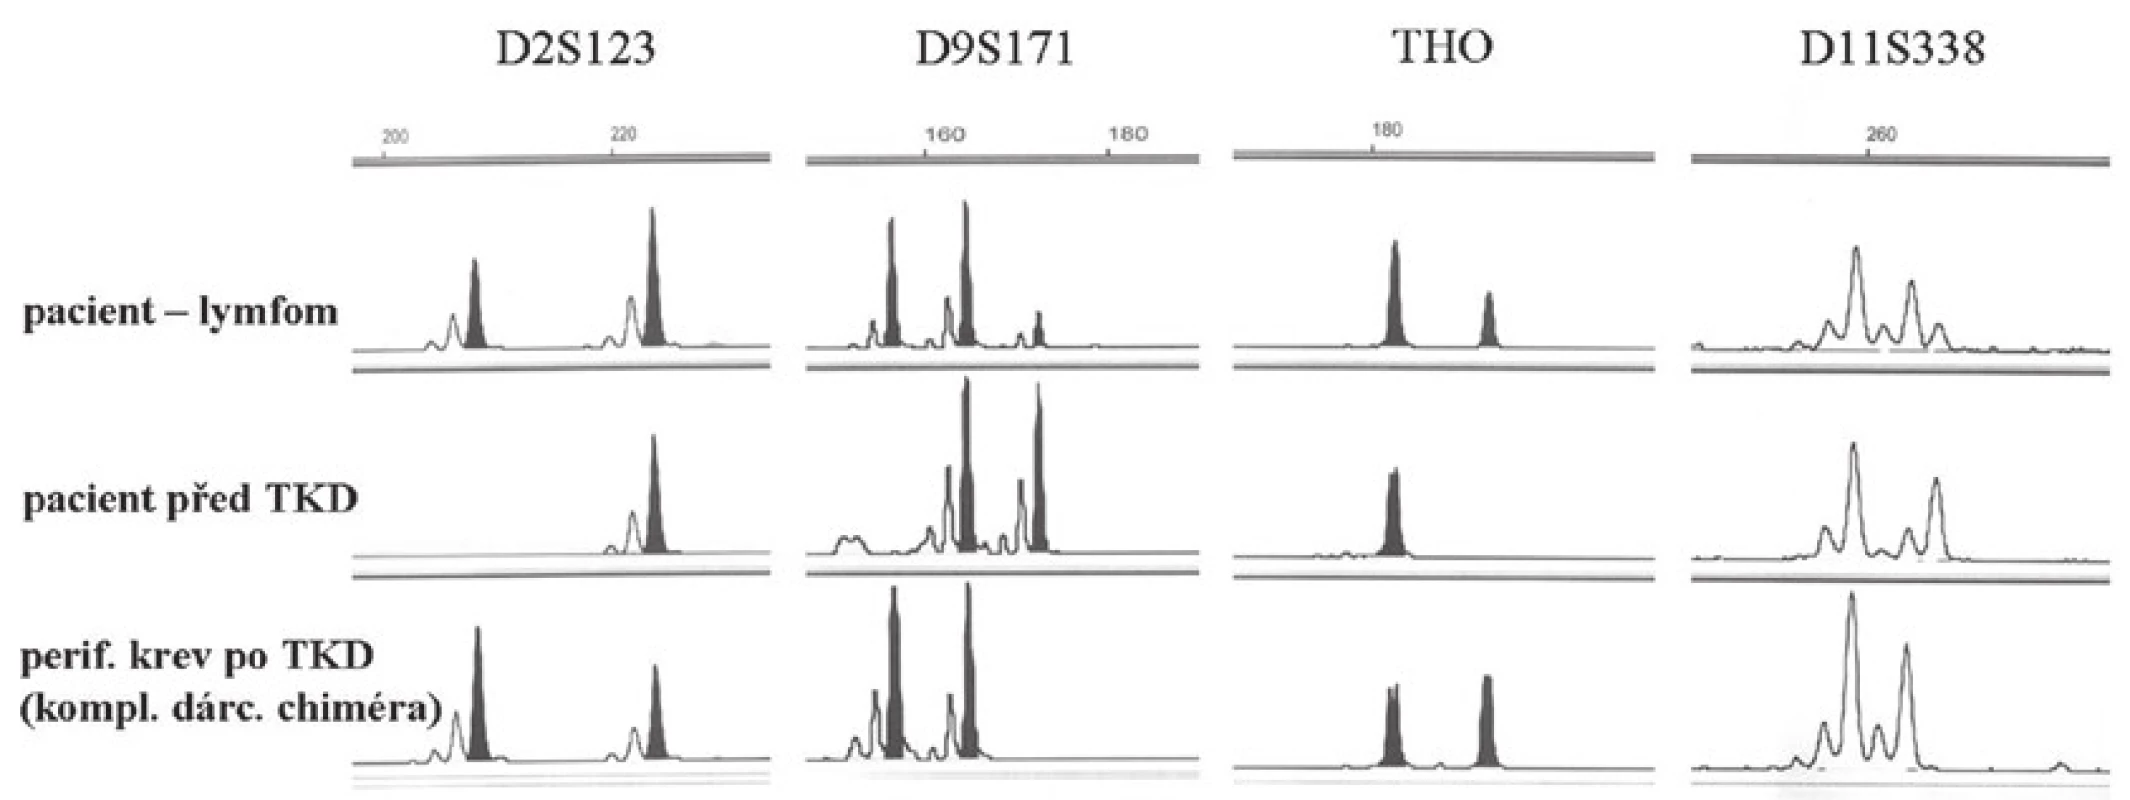 Pacient 8. Fragmentační analýza: srovnání genotypů pomocí STR markerů (D2S123, D9S171, THO a D11S338) - biopsie žaludku s lymfomem, DNA pacienta před transplantací kostní dřeně (TKD) a DNA z periferní krve po TKD, kde byl detekován kompletní dárcovský chimérizmus. Ve vzorku DNA izolované z lymfomu je detekován dárcovský genotyp.